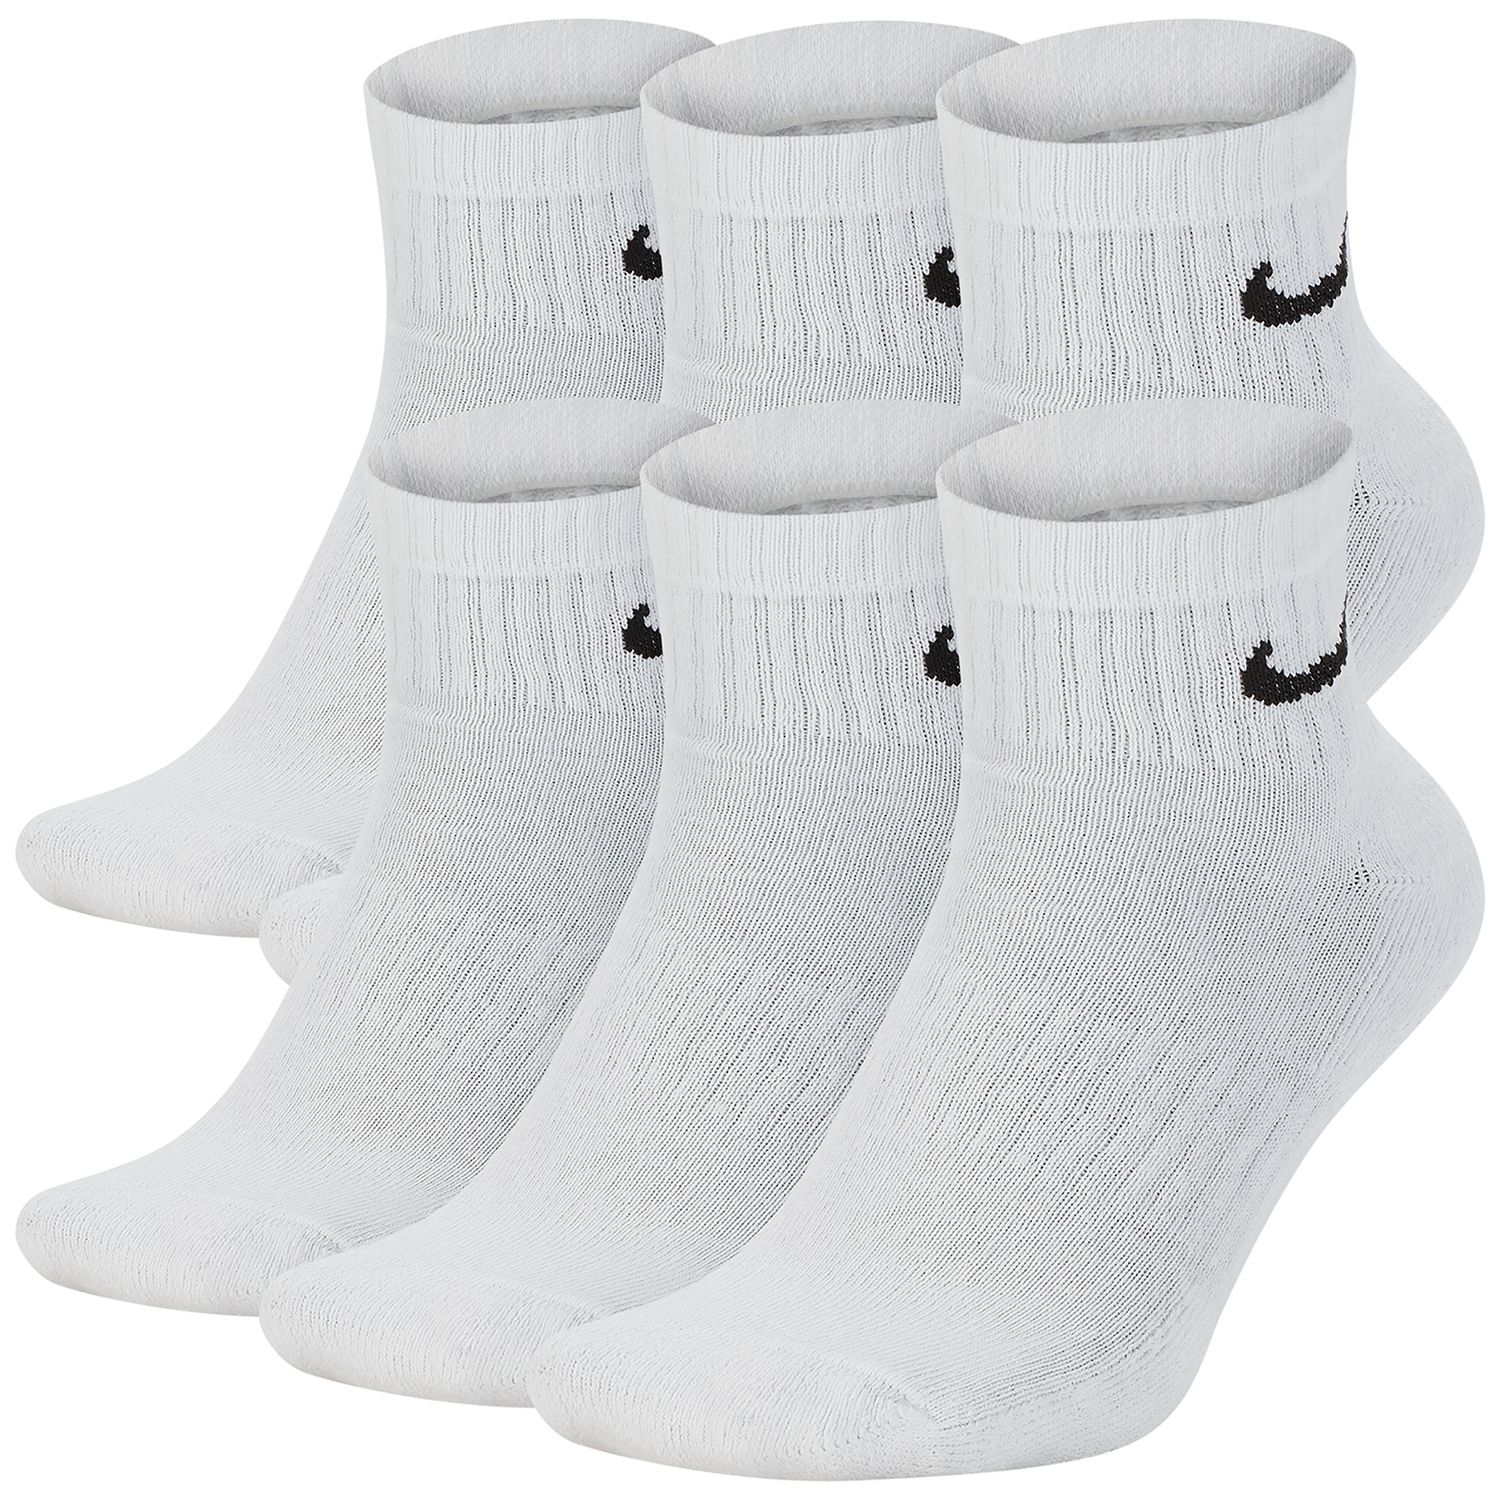 high nike socks white